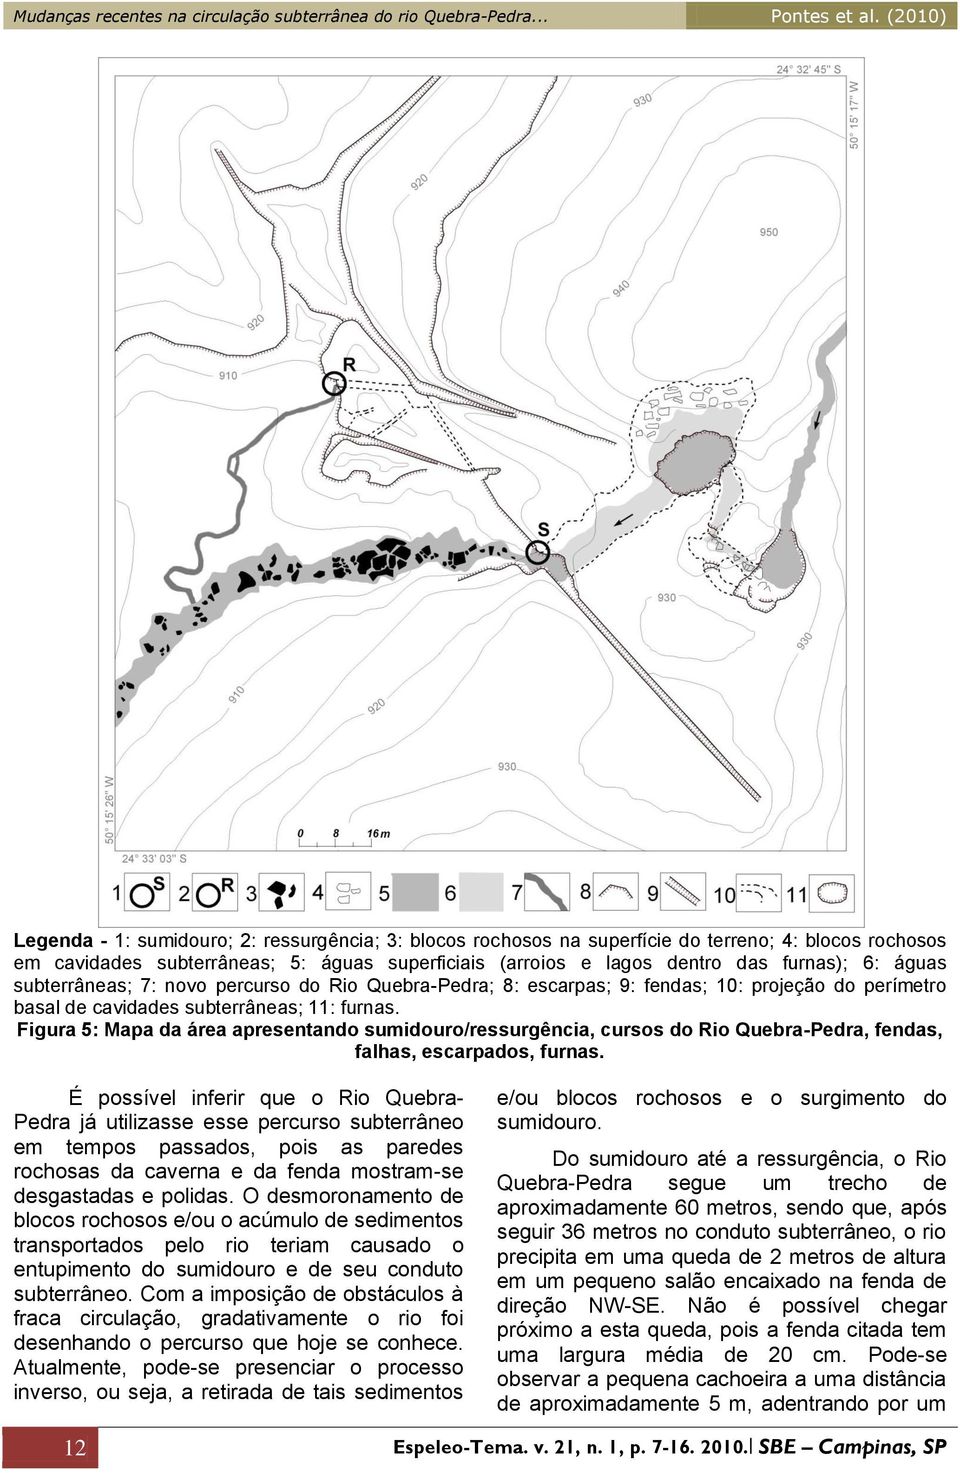 Figura 5: Mapa da área apresentando sumidouro/ressurgência, cursos do Rio Quebra-Pedra, fendas, falhas, escarpados, furnas.